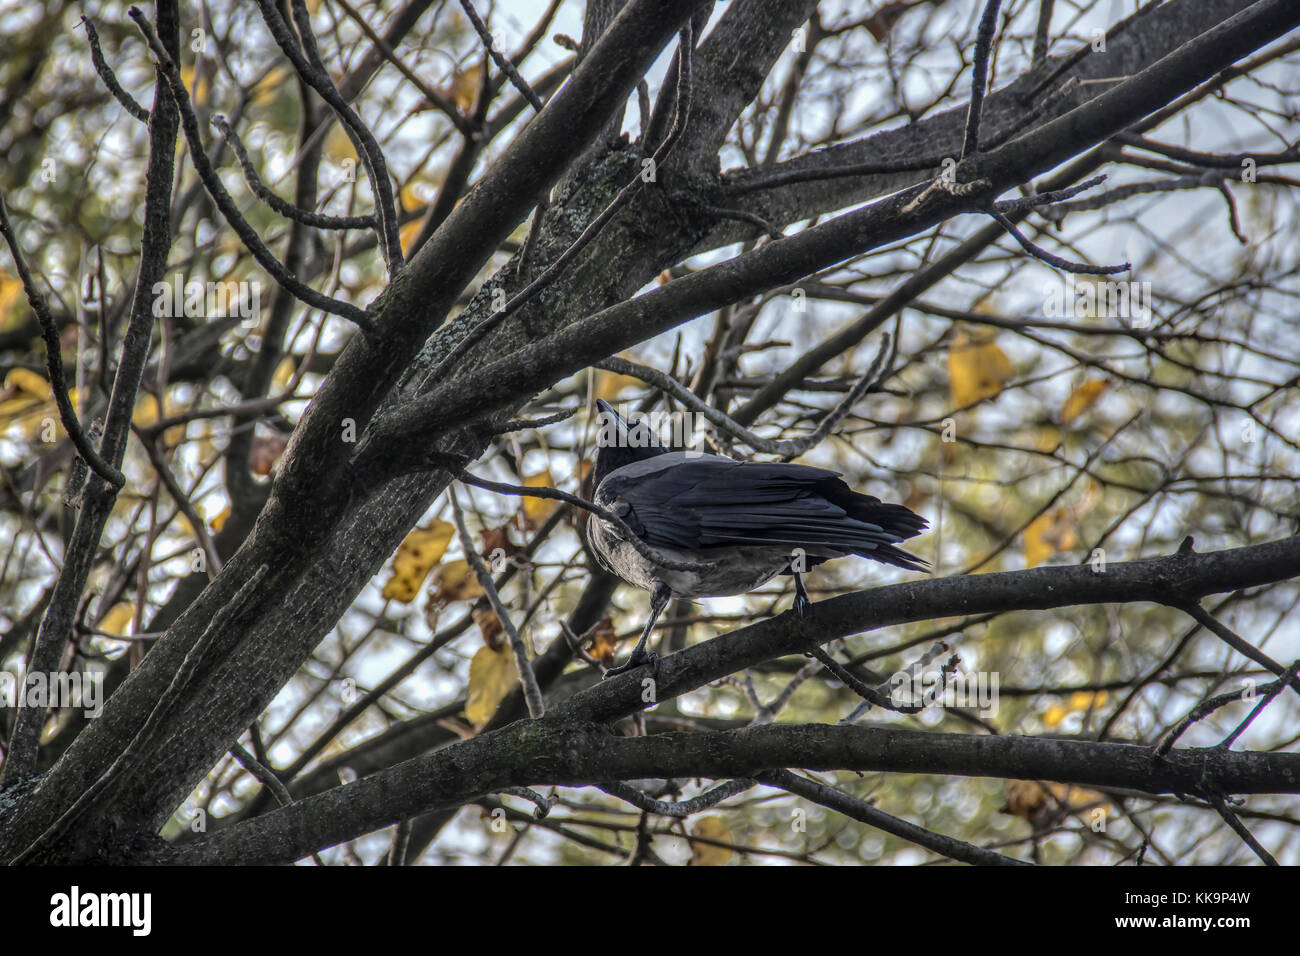 Serbie - hooded crow (corvus cornix) percher sur un arbre haut branch Banque D'Images